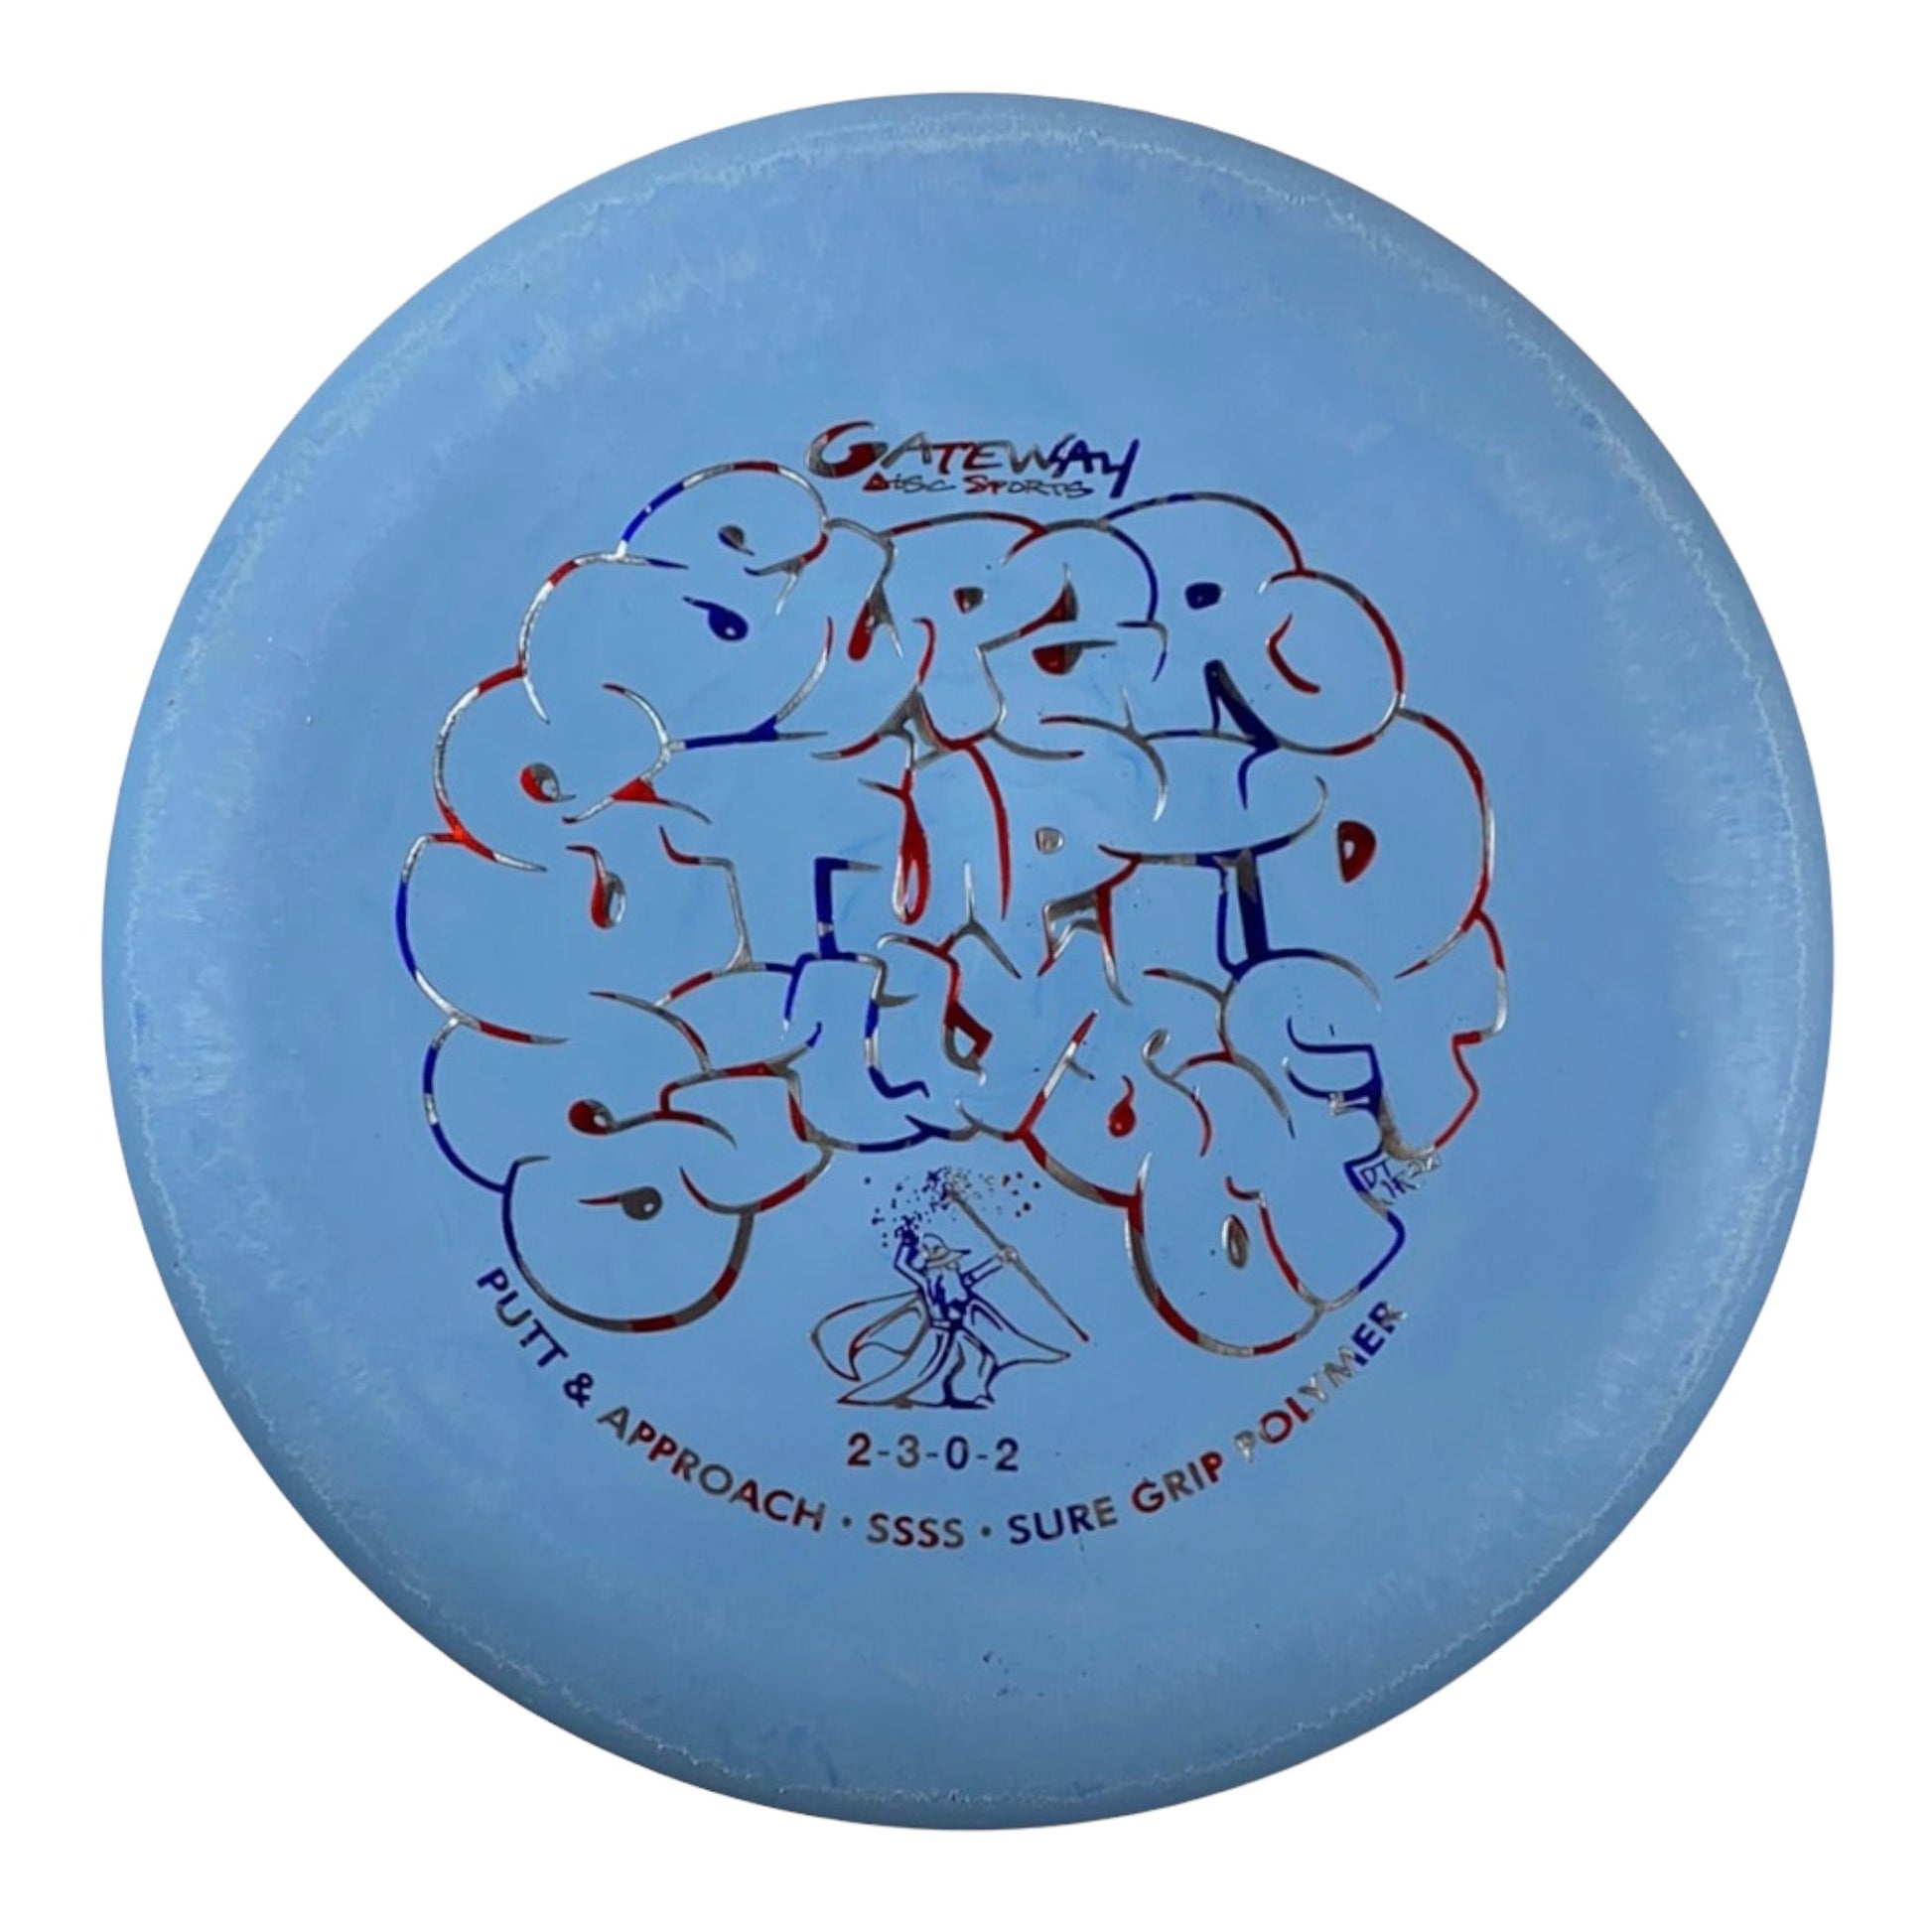 Gateway Disc Sports Wizard | Super Stupid Silly Soft (SSSS) | Blue/USA 176g Disc Golf